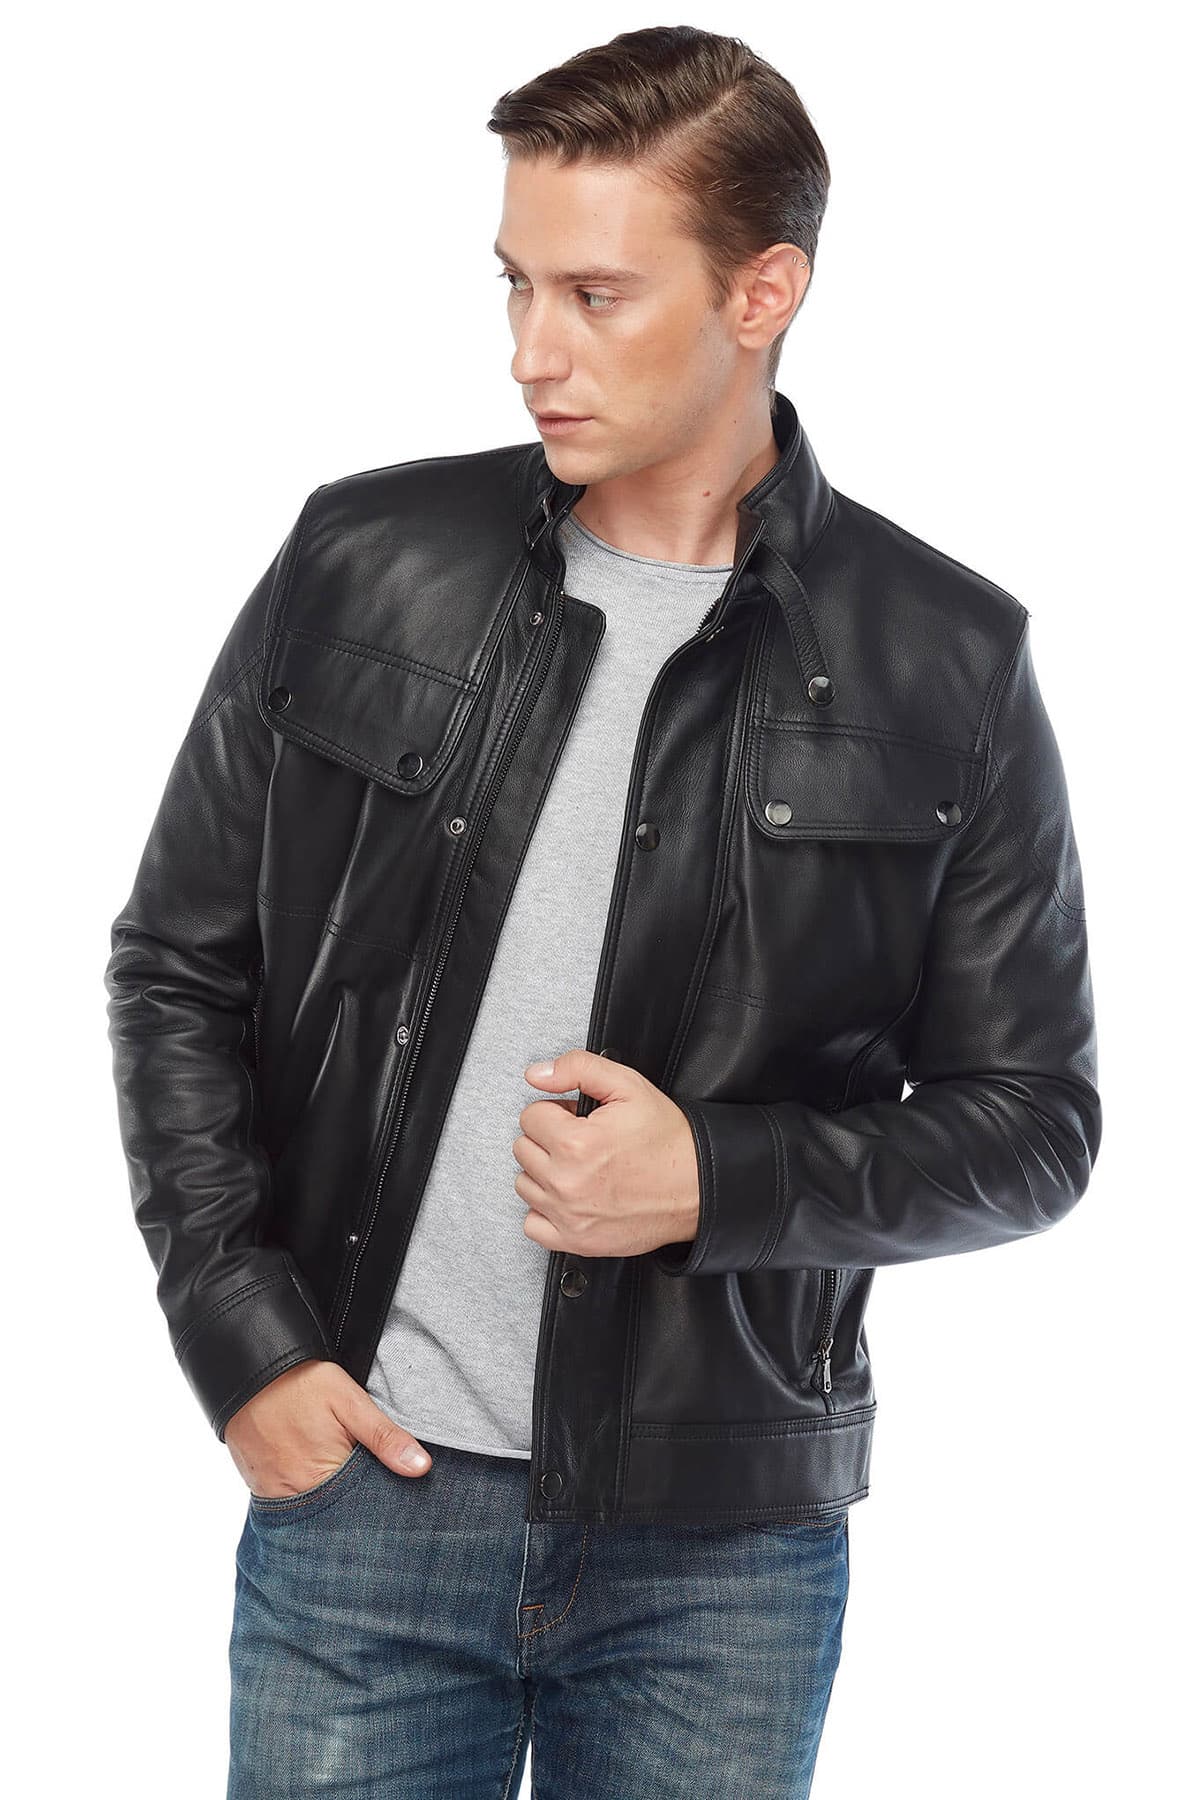 David Beckham Men's 100 % Real Black Leather Jacket